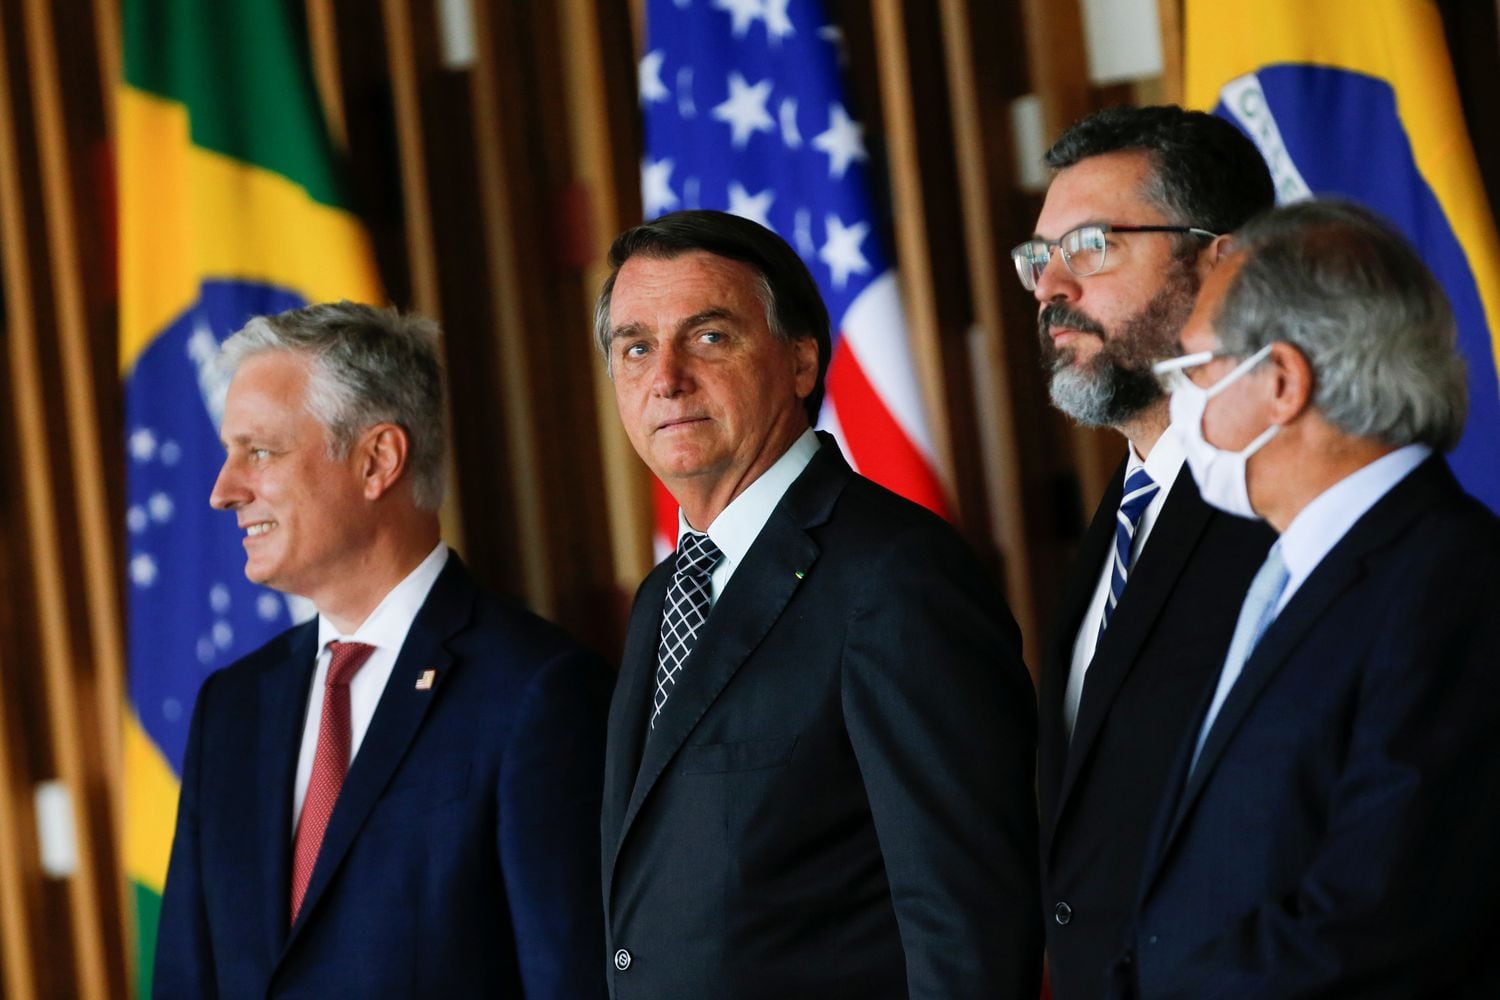 Robert O'Brien, embaixador dos EUA, ao lado de Jair Bolsonaro, Ernesto Araújo e Paulo Guedes no dia 20 de outubro, no Itamaraty.